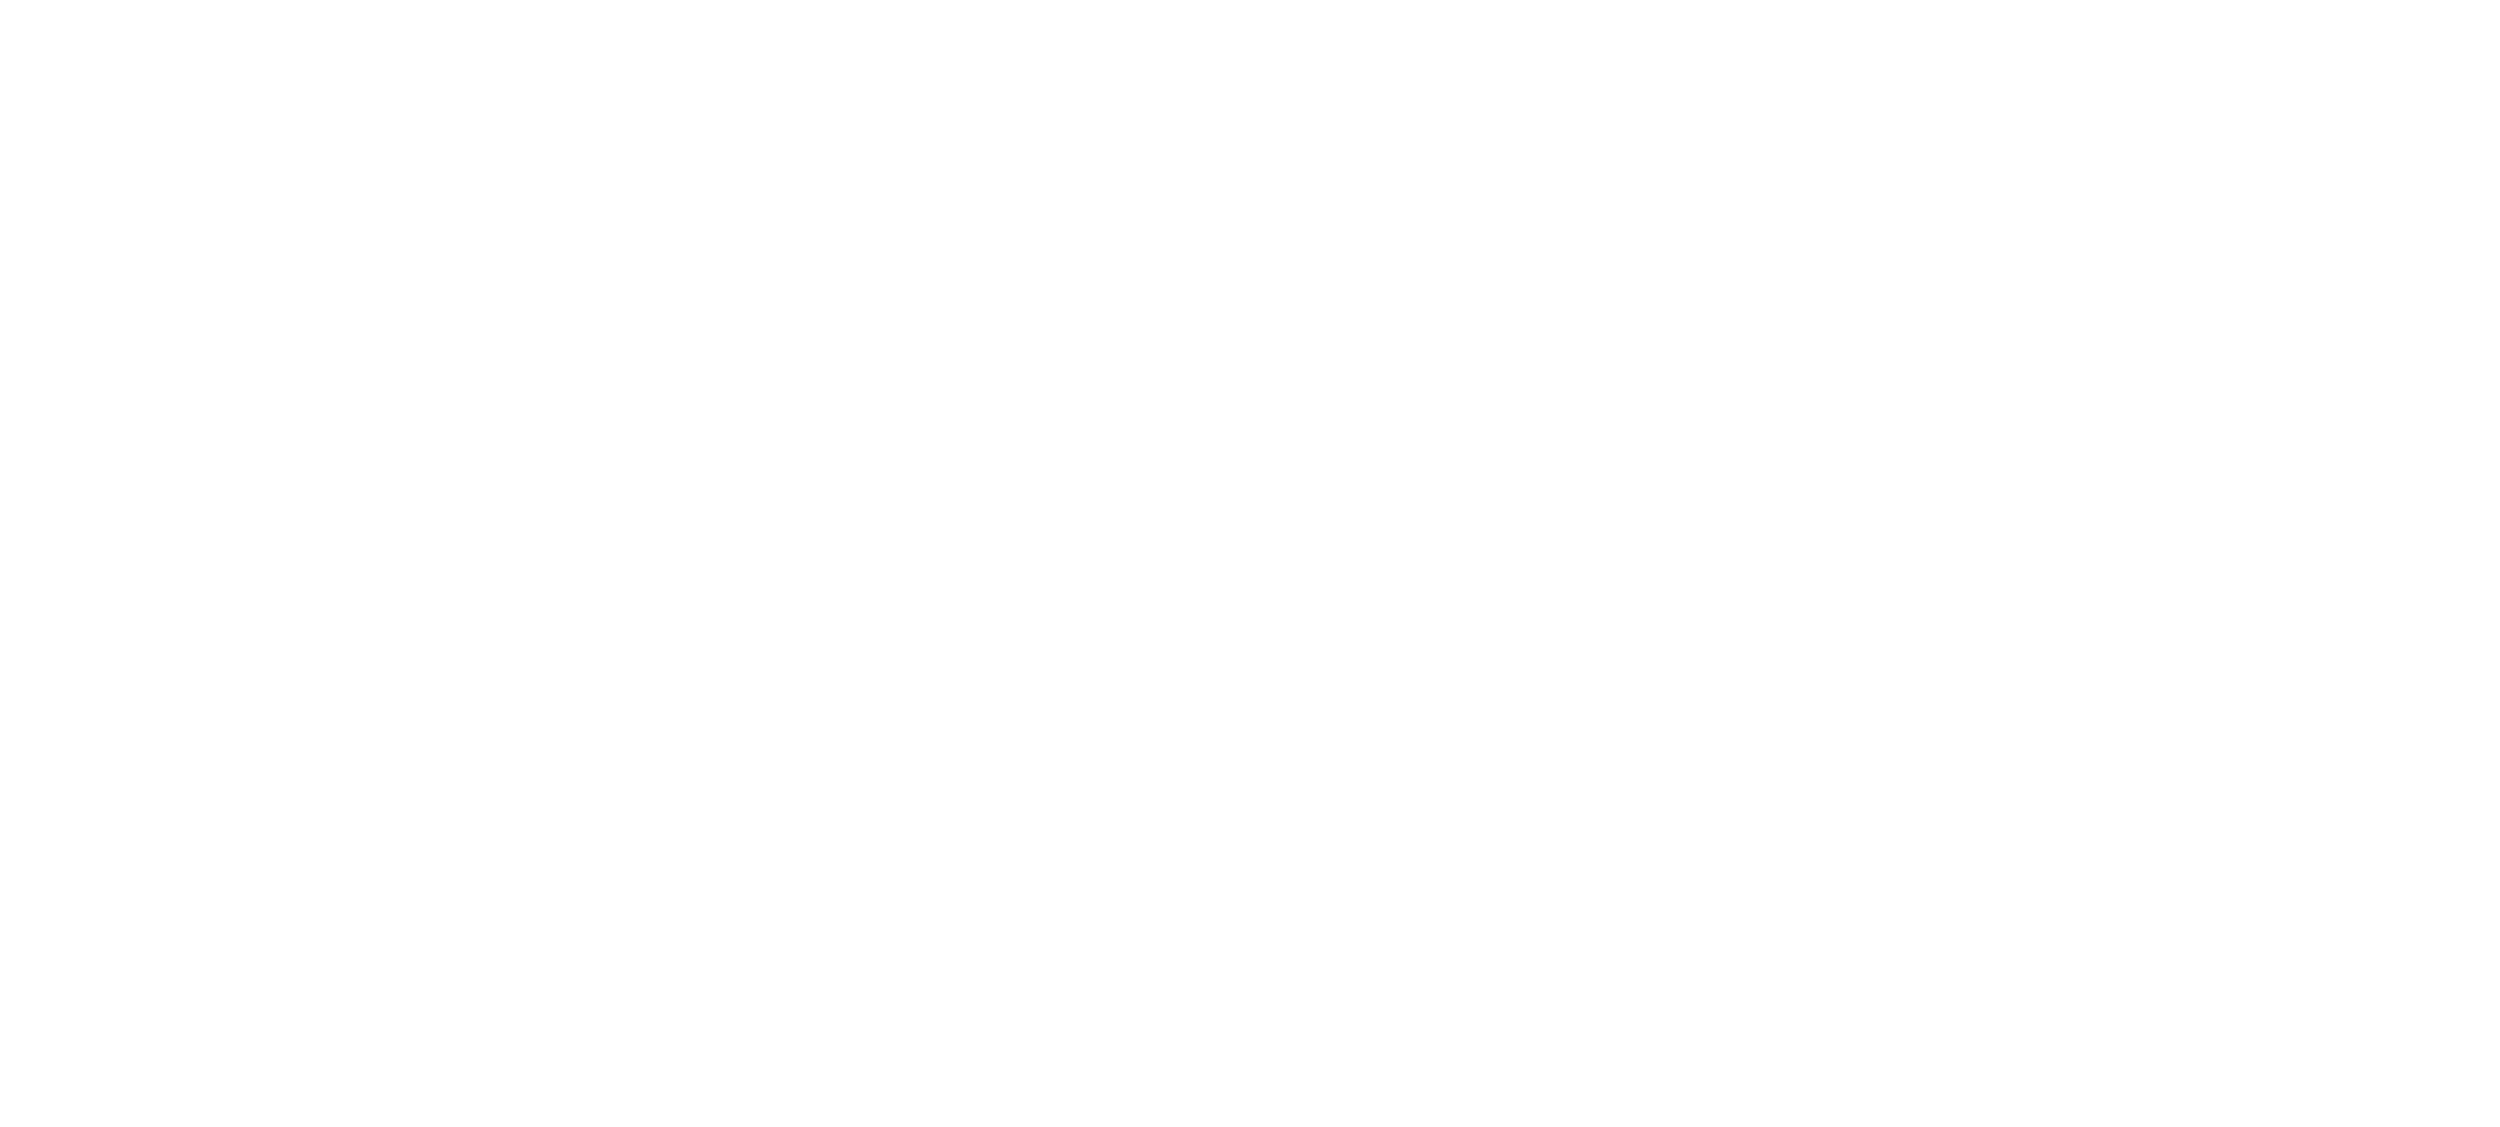 MBG